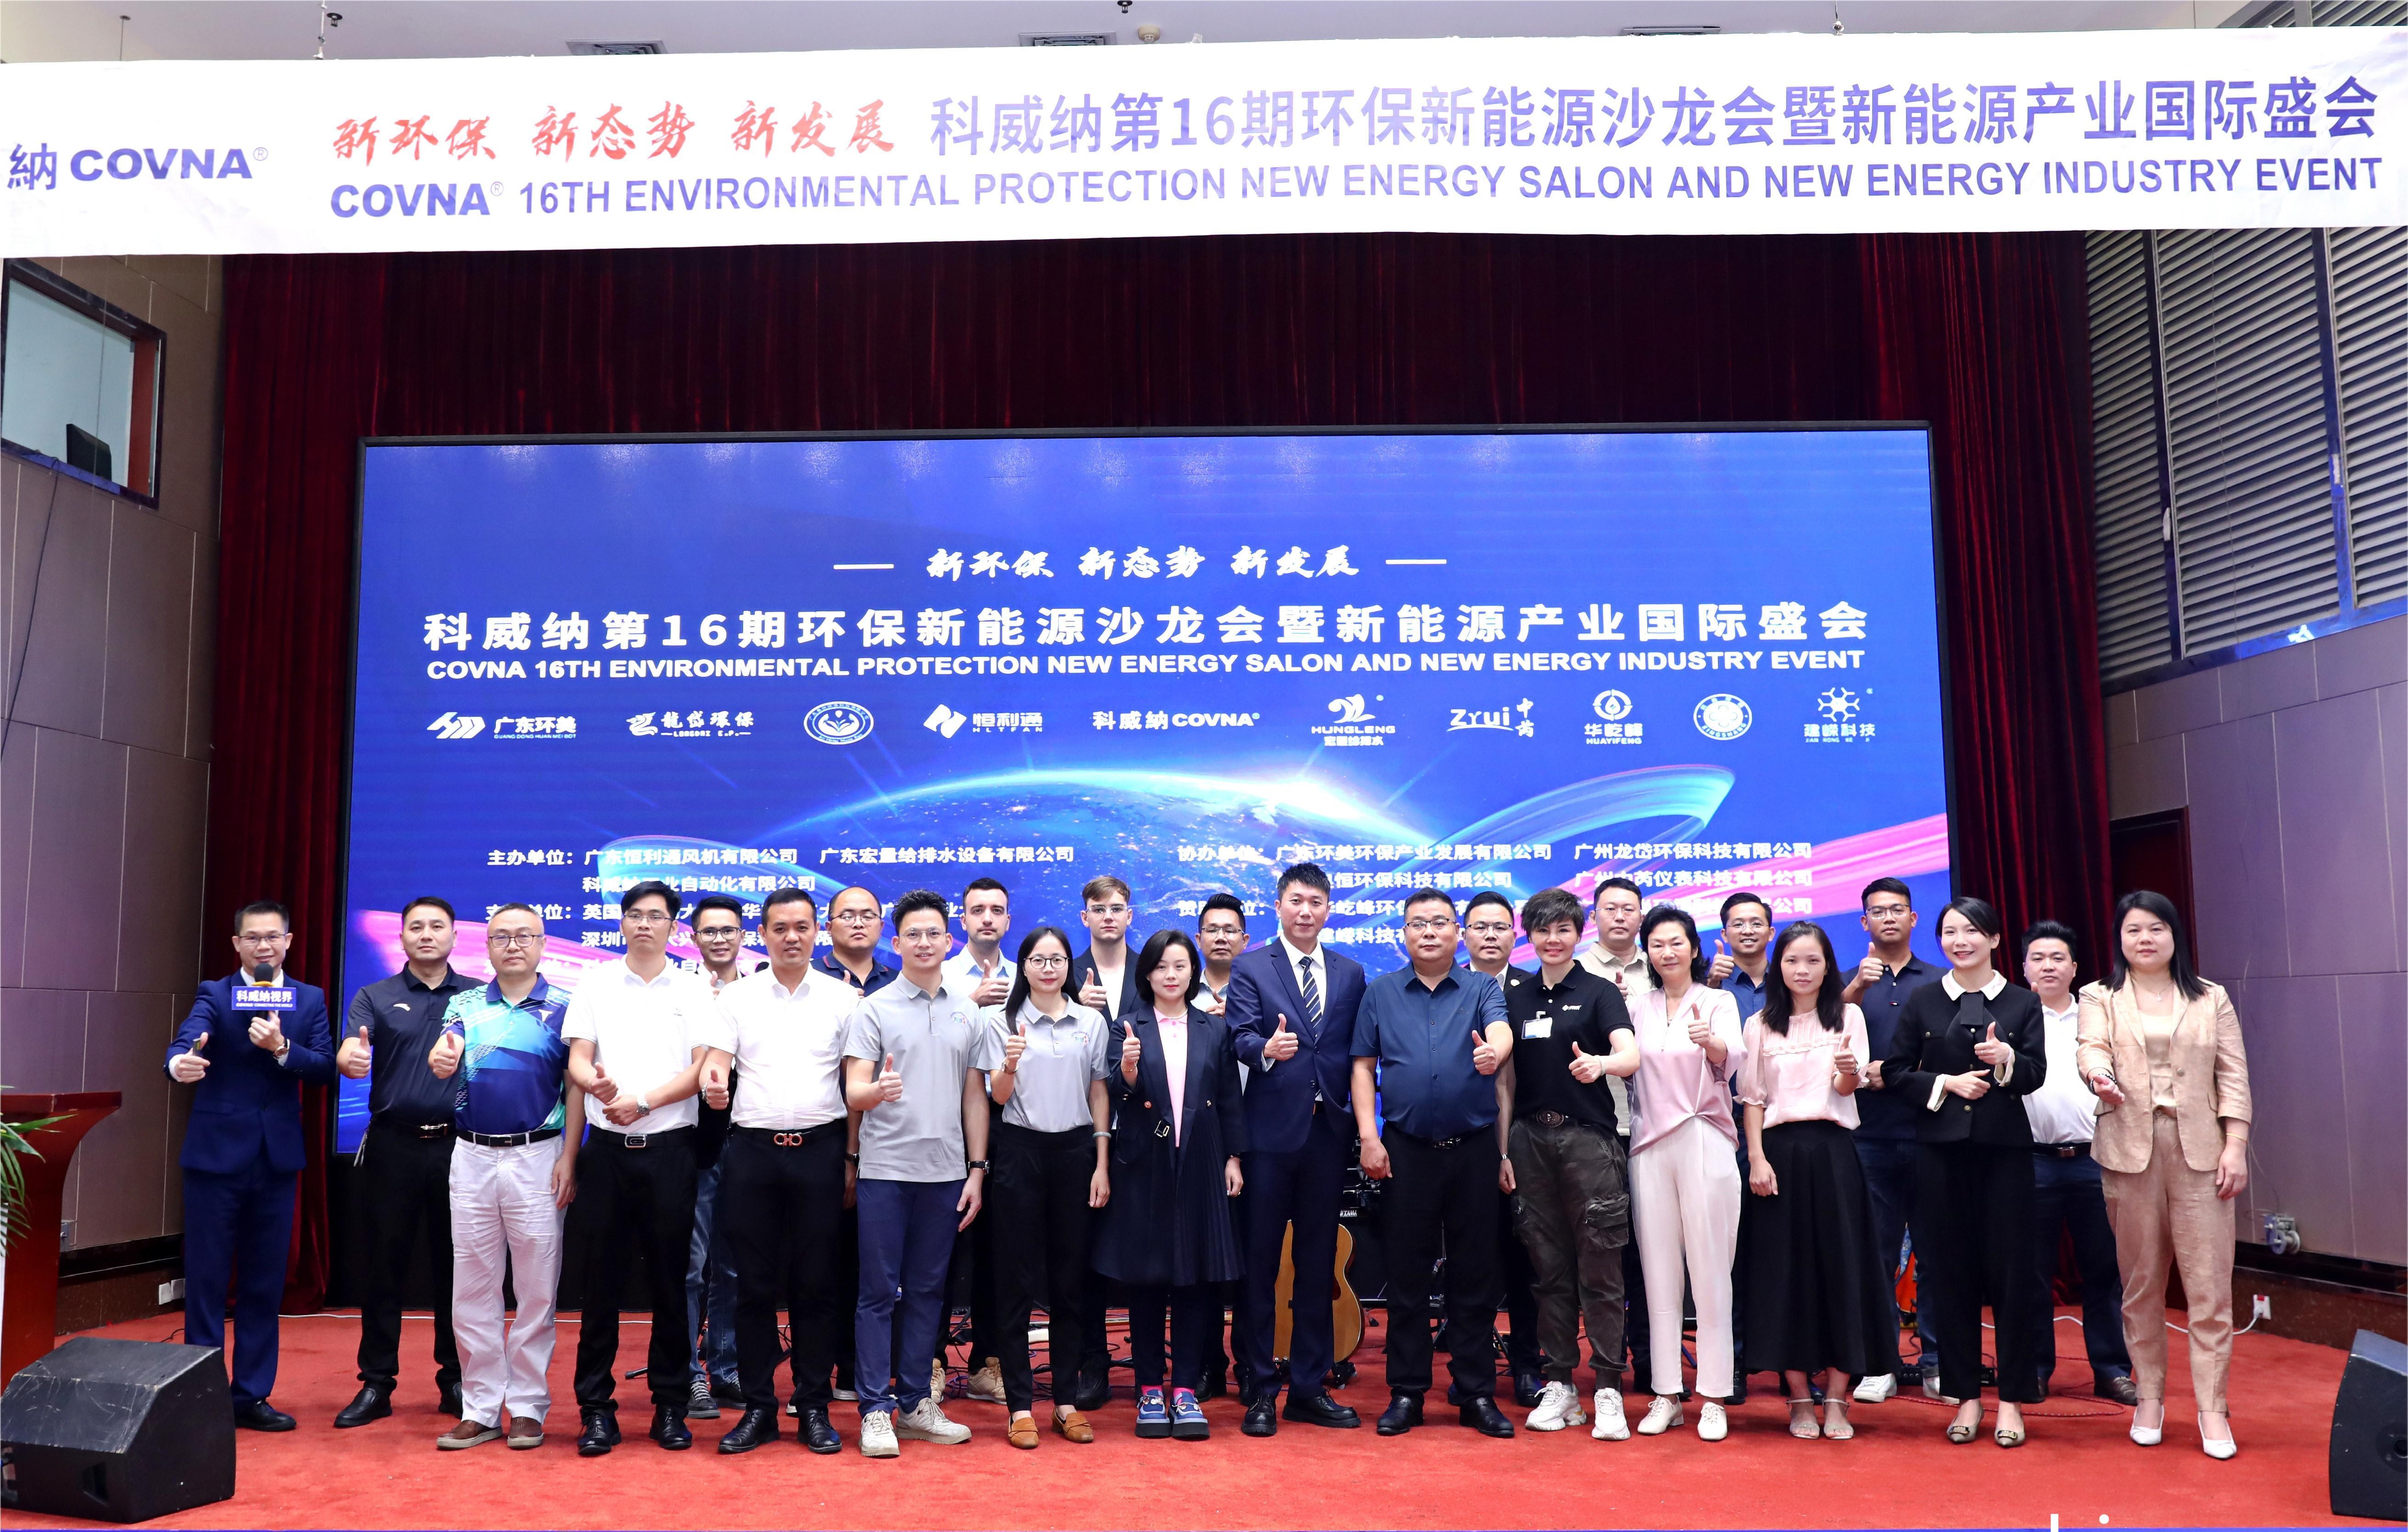 COVNA STARK успішно провела галузеву конференцію з охорони навколишнього середовища та енергозбереження в Гуанчжоу